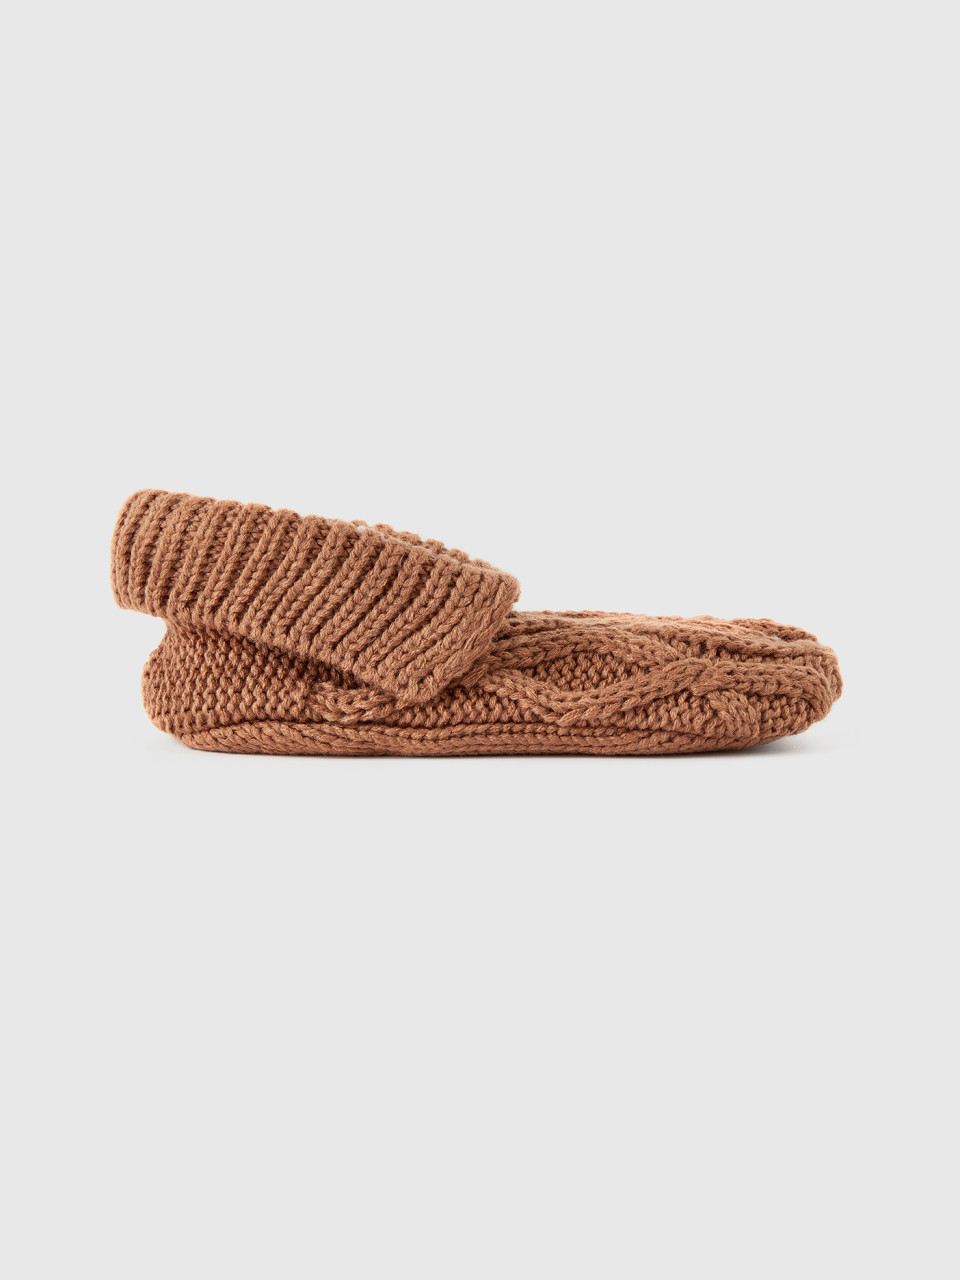 Benetton, Lined Knit Socks, Camel, Women